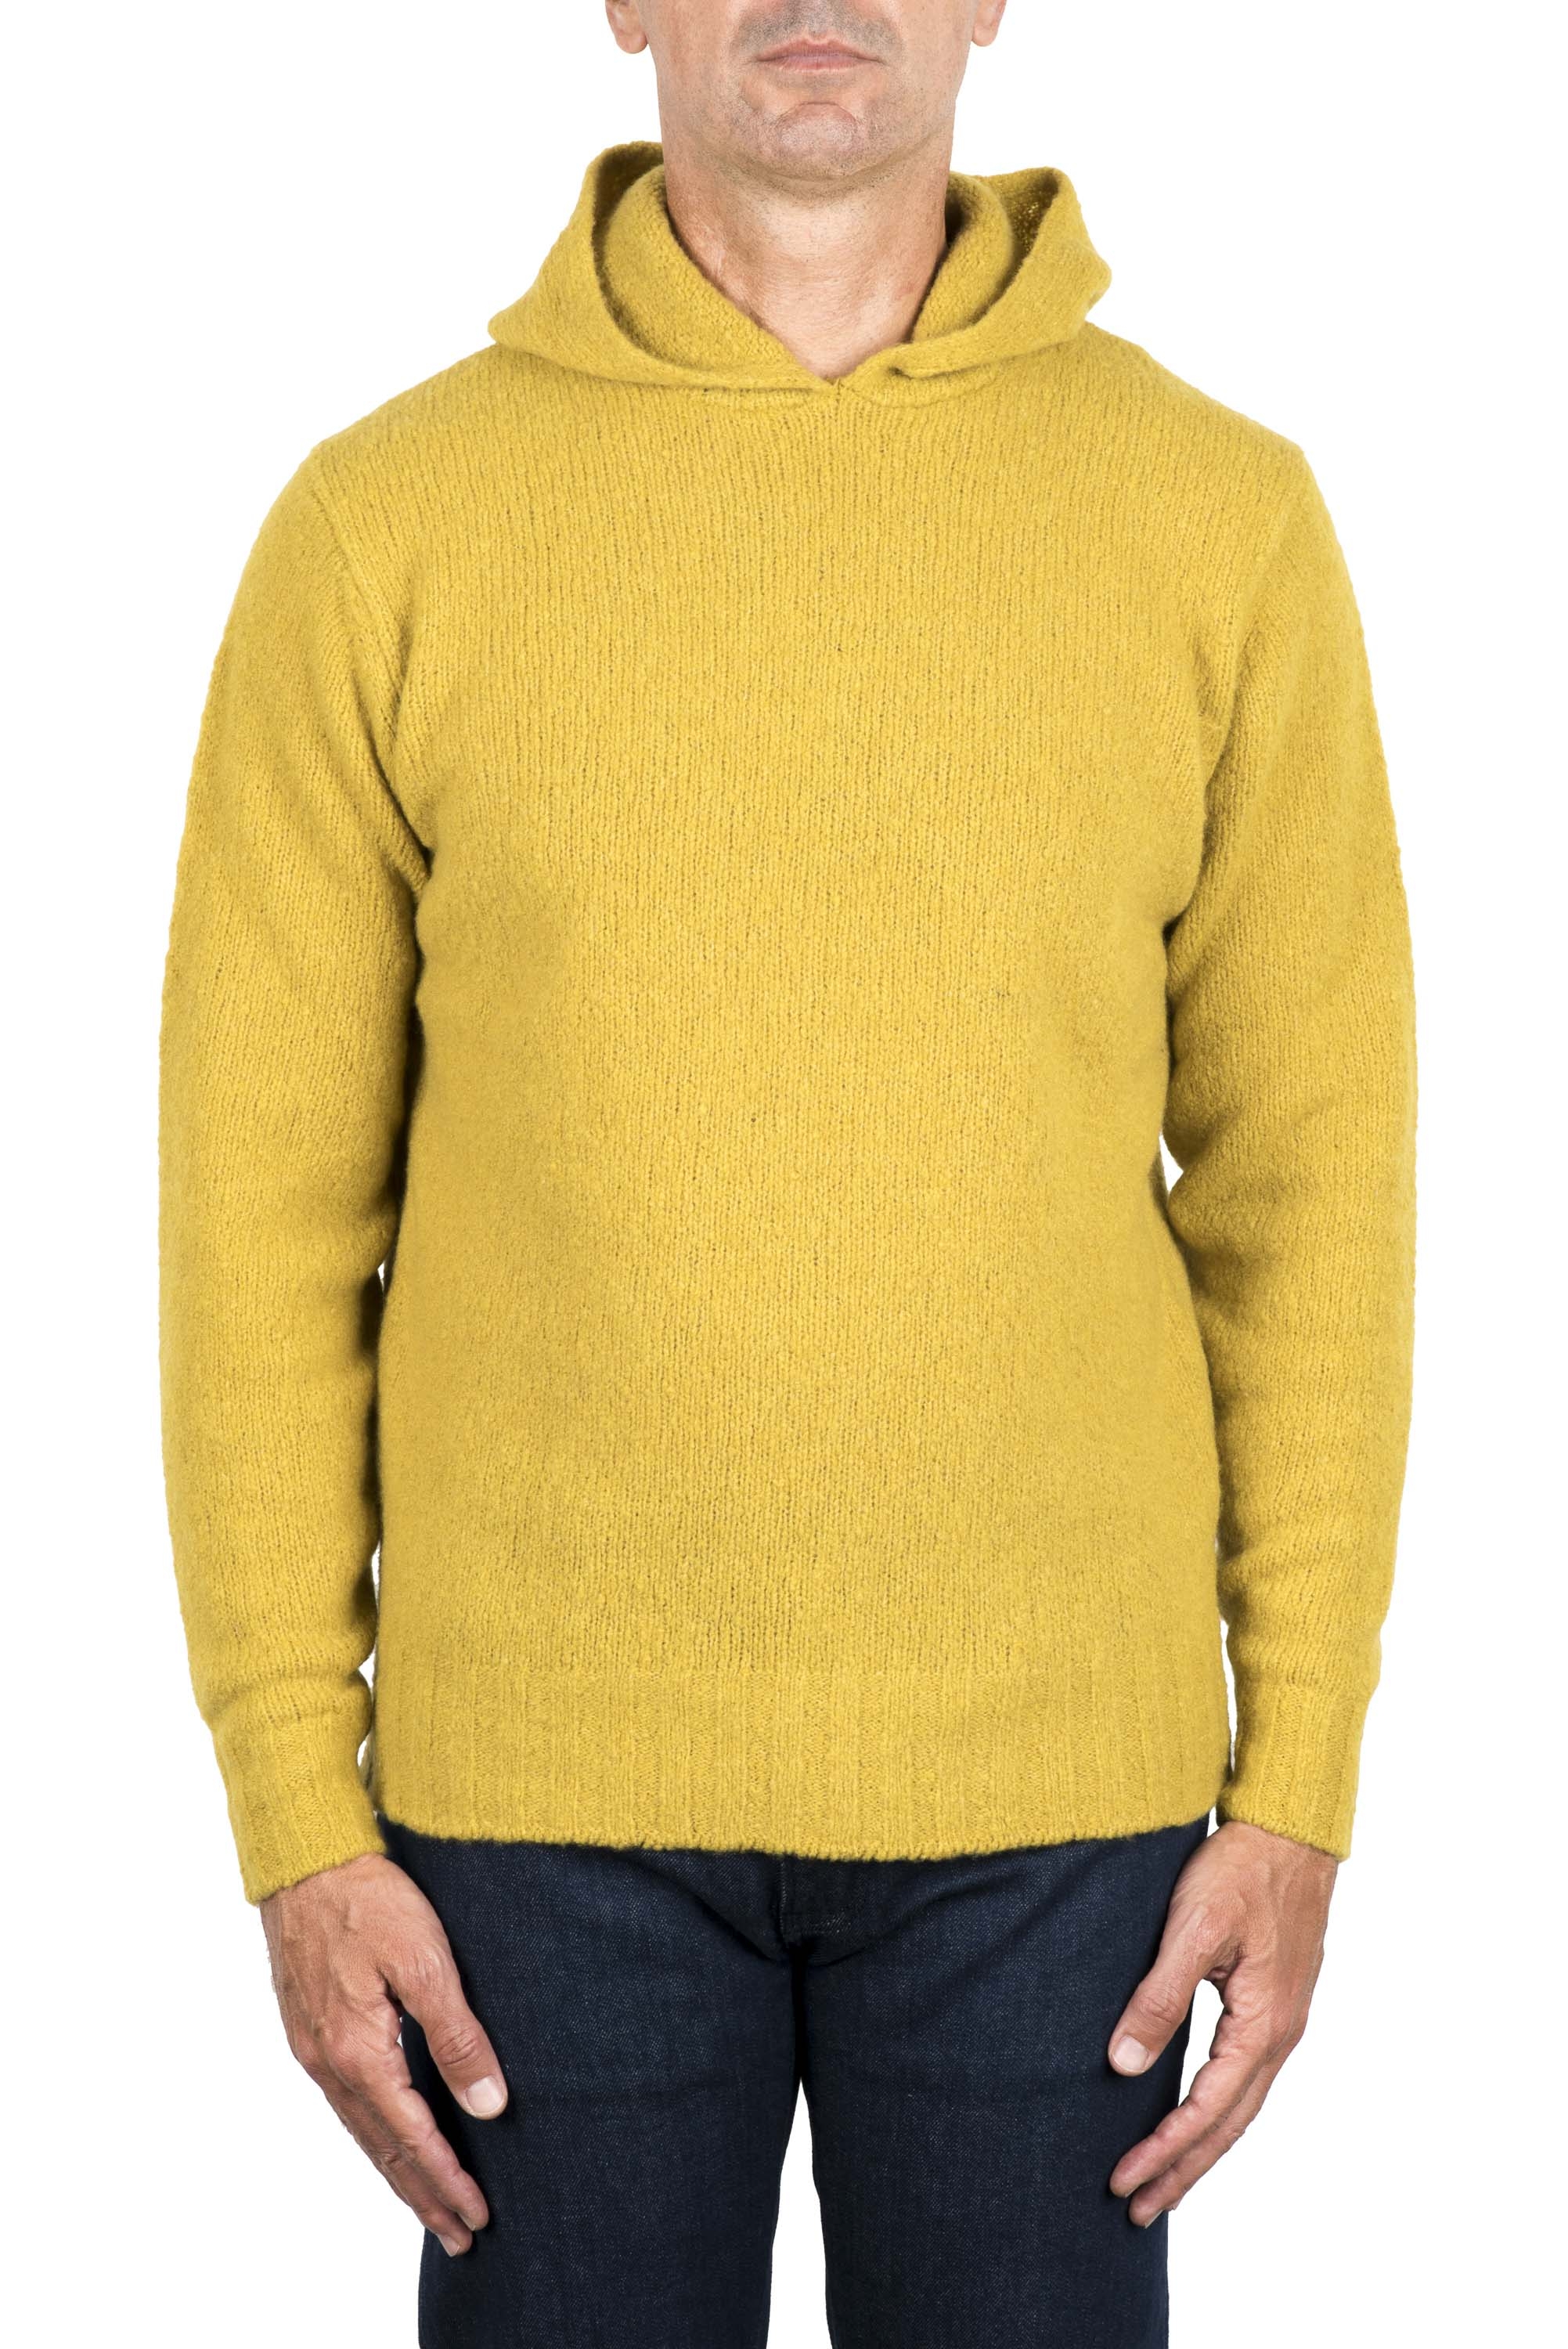 SBU 03513_2021AW Maglia con cappuccio in lana misto cashmere gialla 01